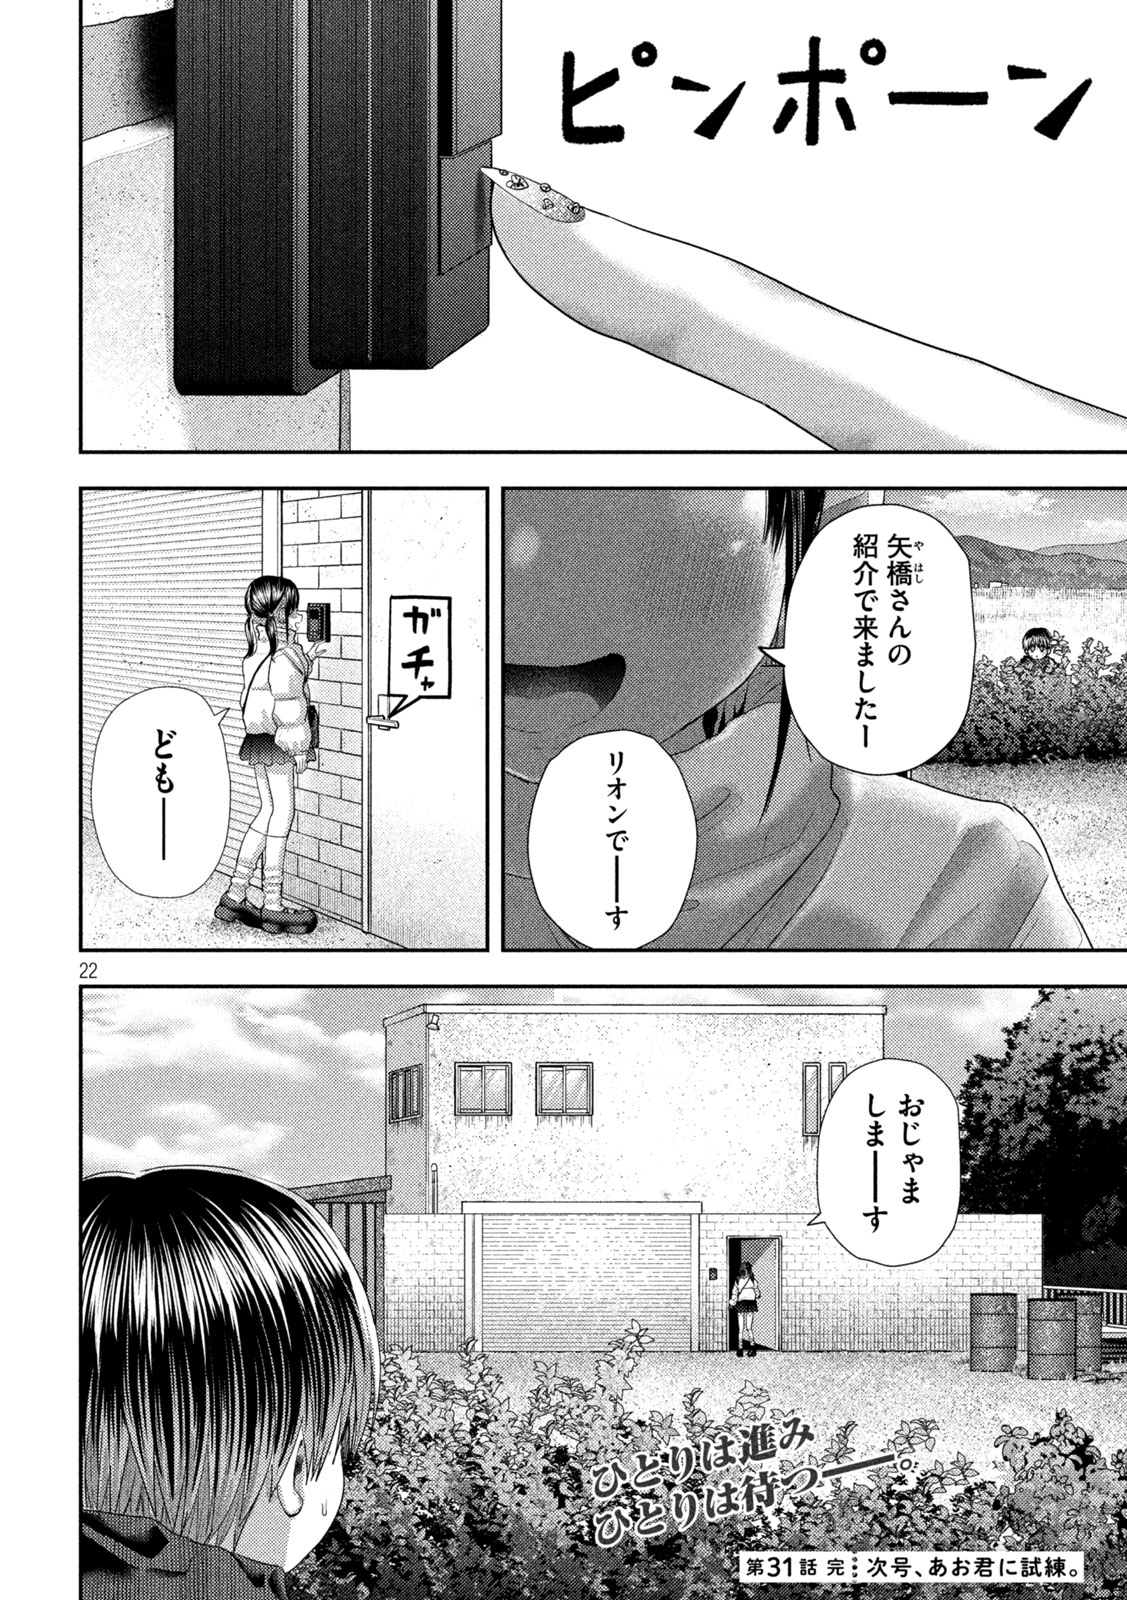 Nezumi no Koi - Chapter 31 - Page 22